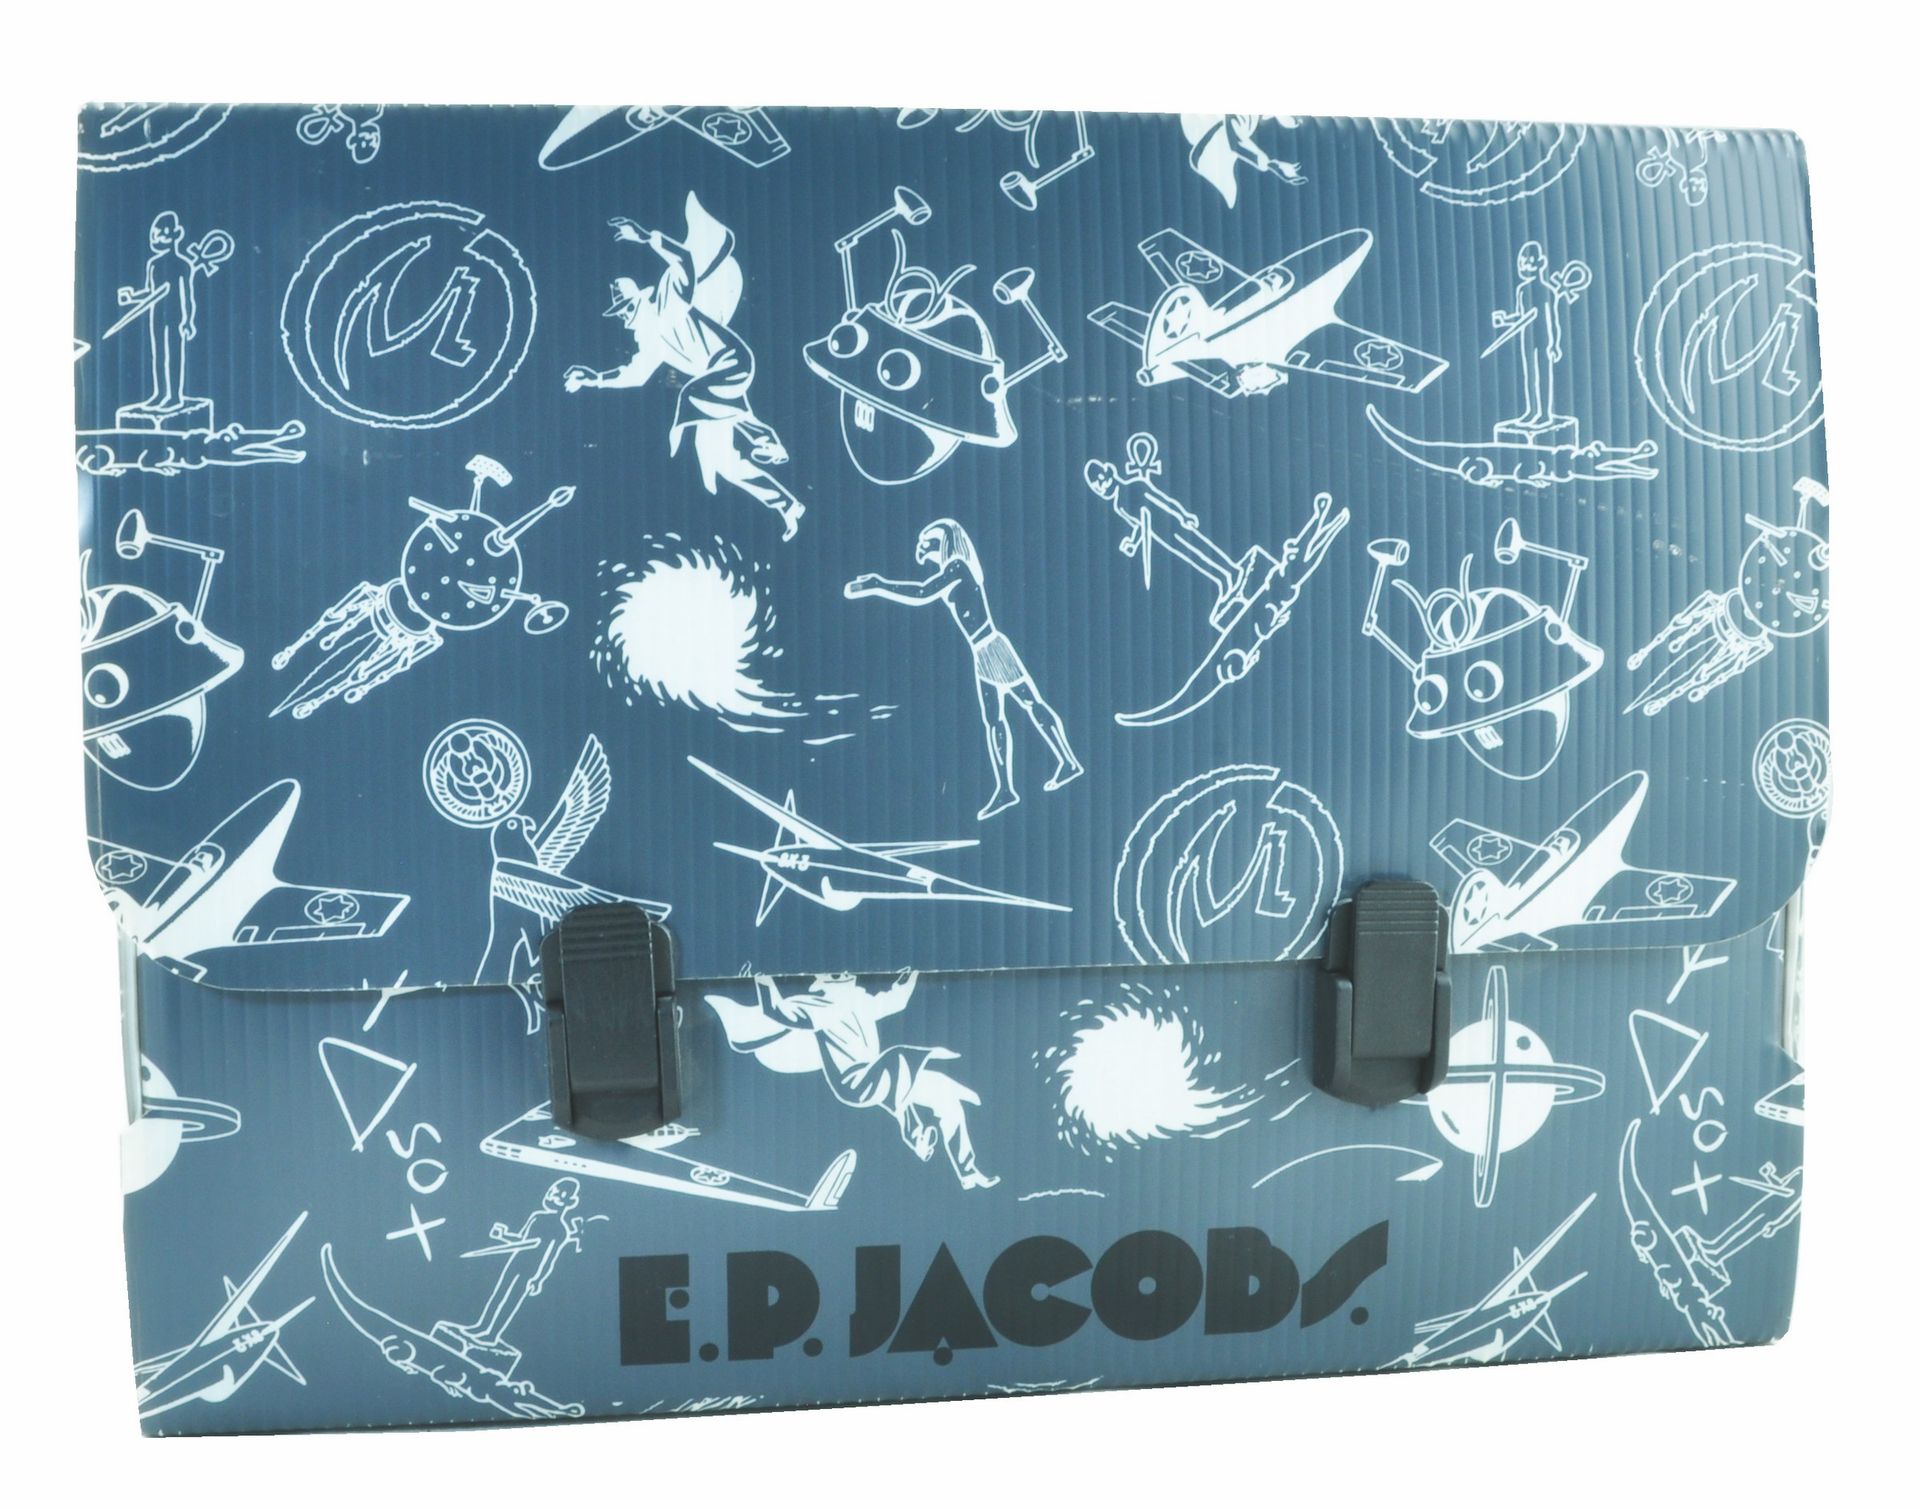 JACOBS 布莱克和莫蒂默。灰色PVC手提箱，有13个帆布卷，包括Rayon U。1991年制造。伦巴第风格相册的第四版。版本5000册。与13幅插图的作品集&hellip;